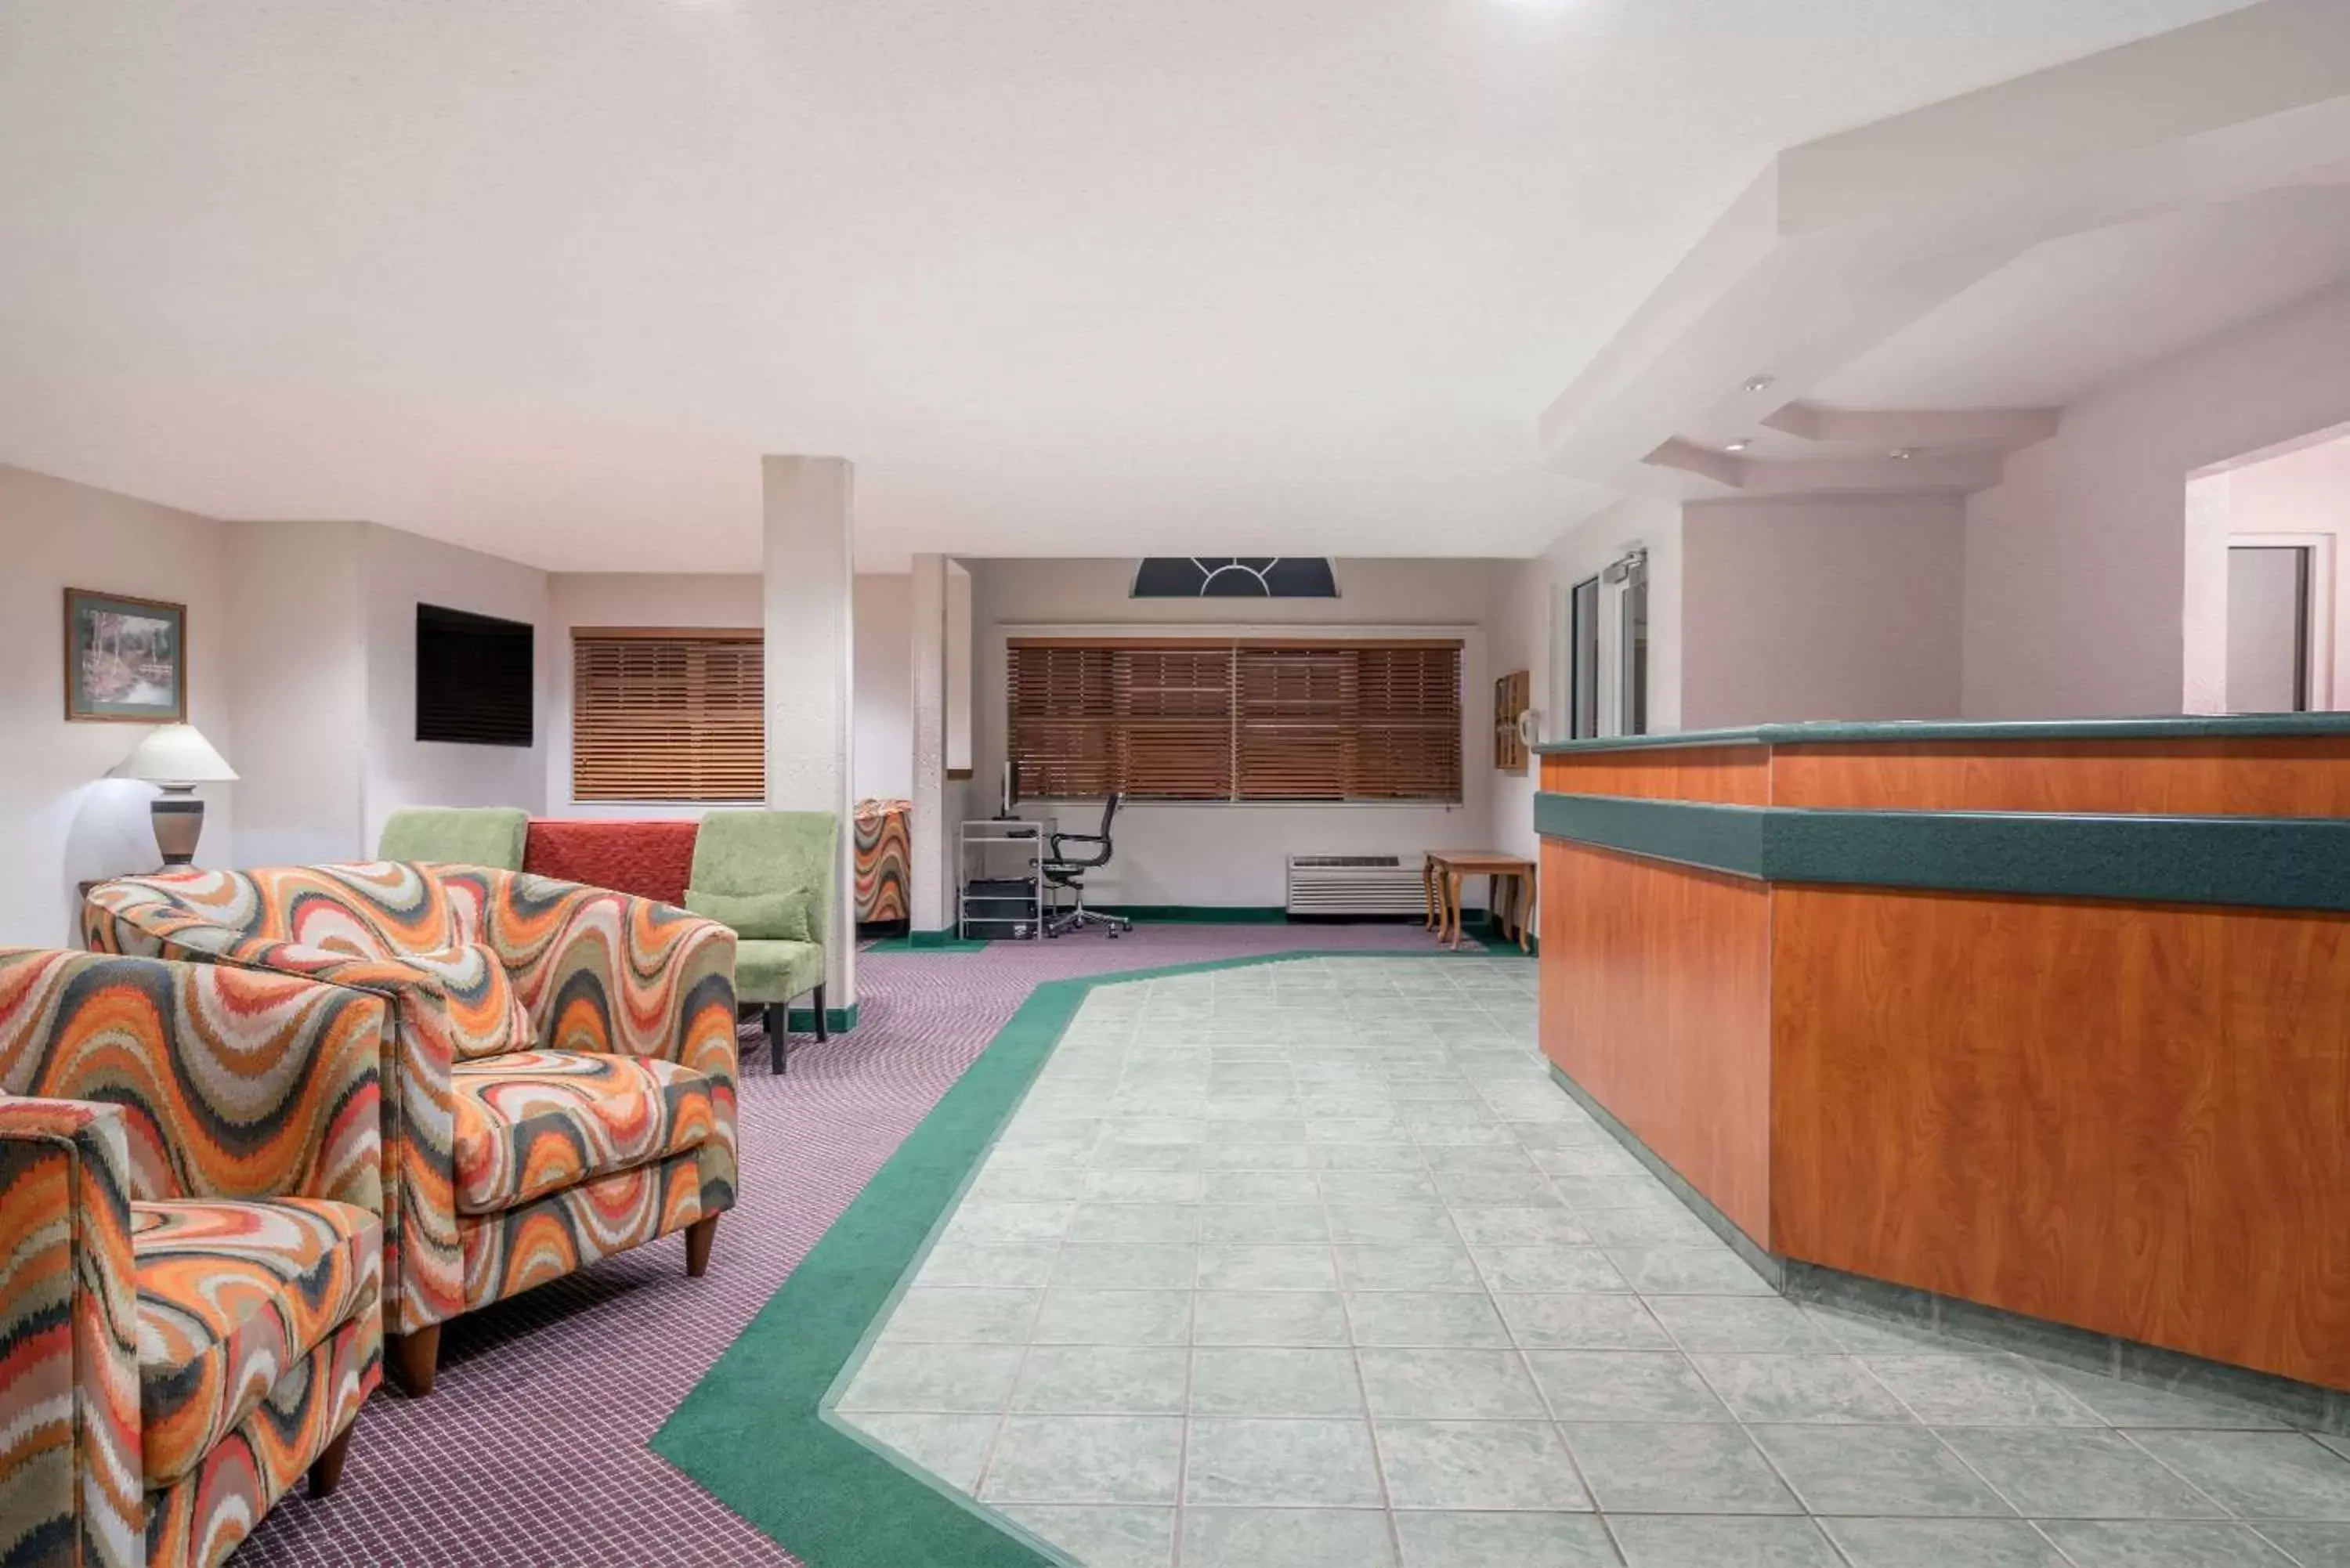 Lobby or reception, Lobby/Reception in Microtel Inn & Suites by Wyndham New Ulm